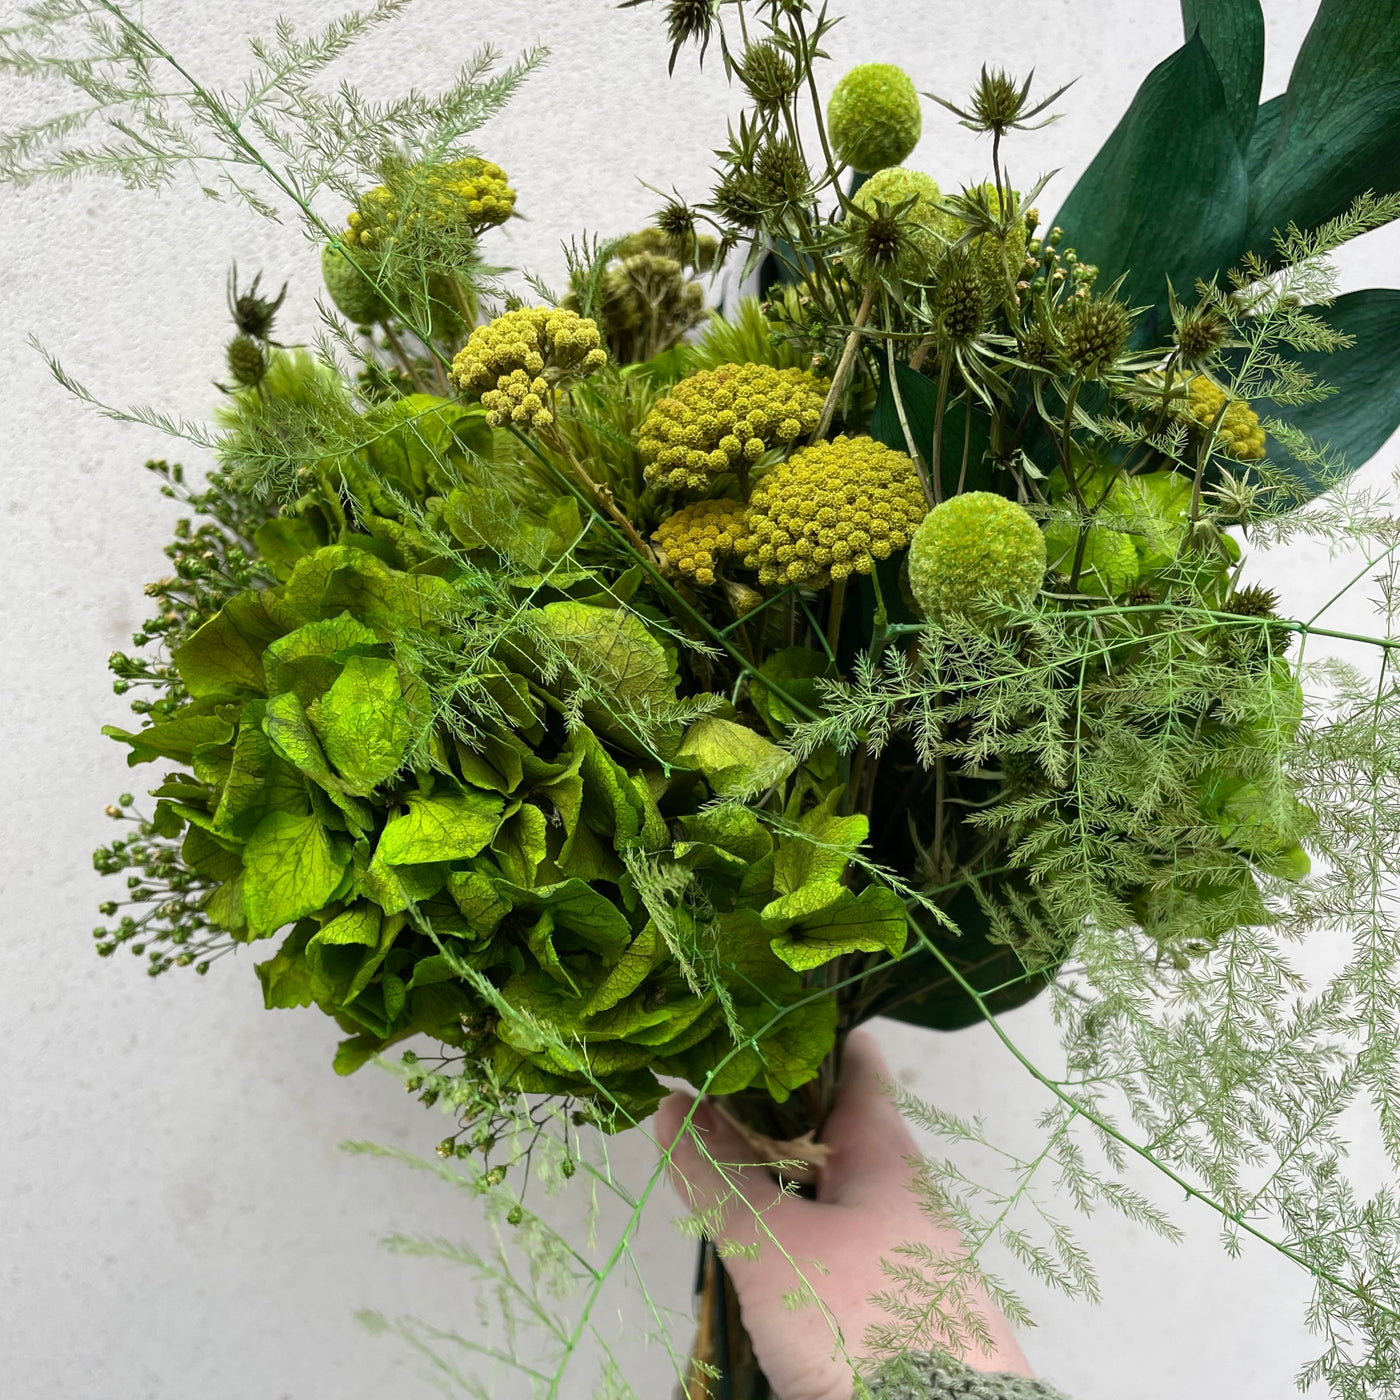 Bouquet de fleurs stabilisées éternelles vert composé d'Hortensia, Chardon Echinops, Chardon, Broom, Craspedia, Achillée, Ruscus, Asparagus. Vue du côté gauche